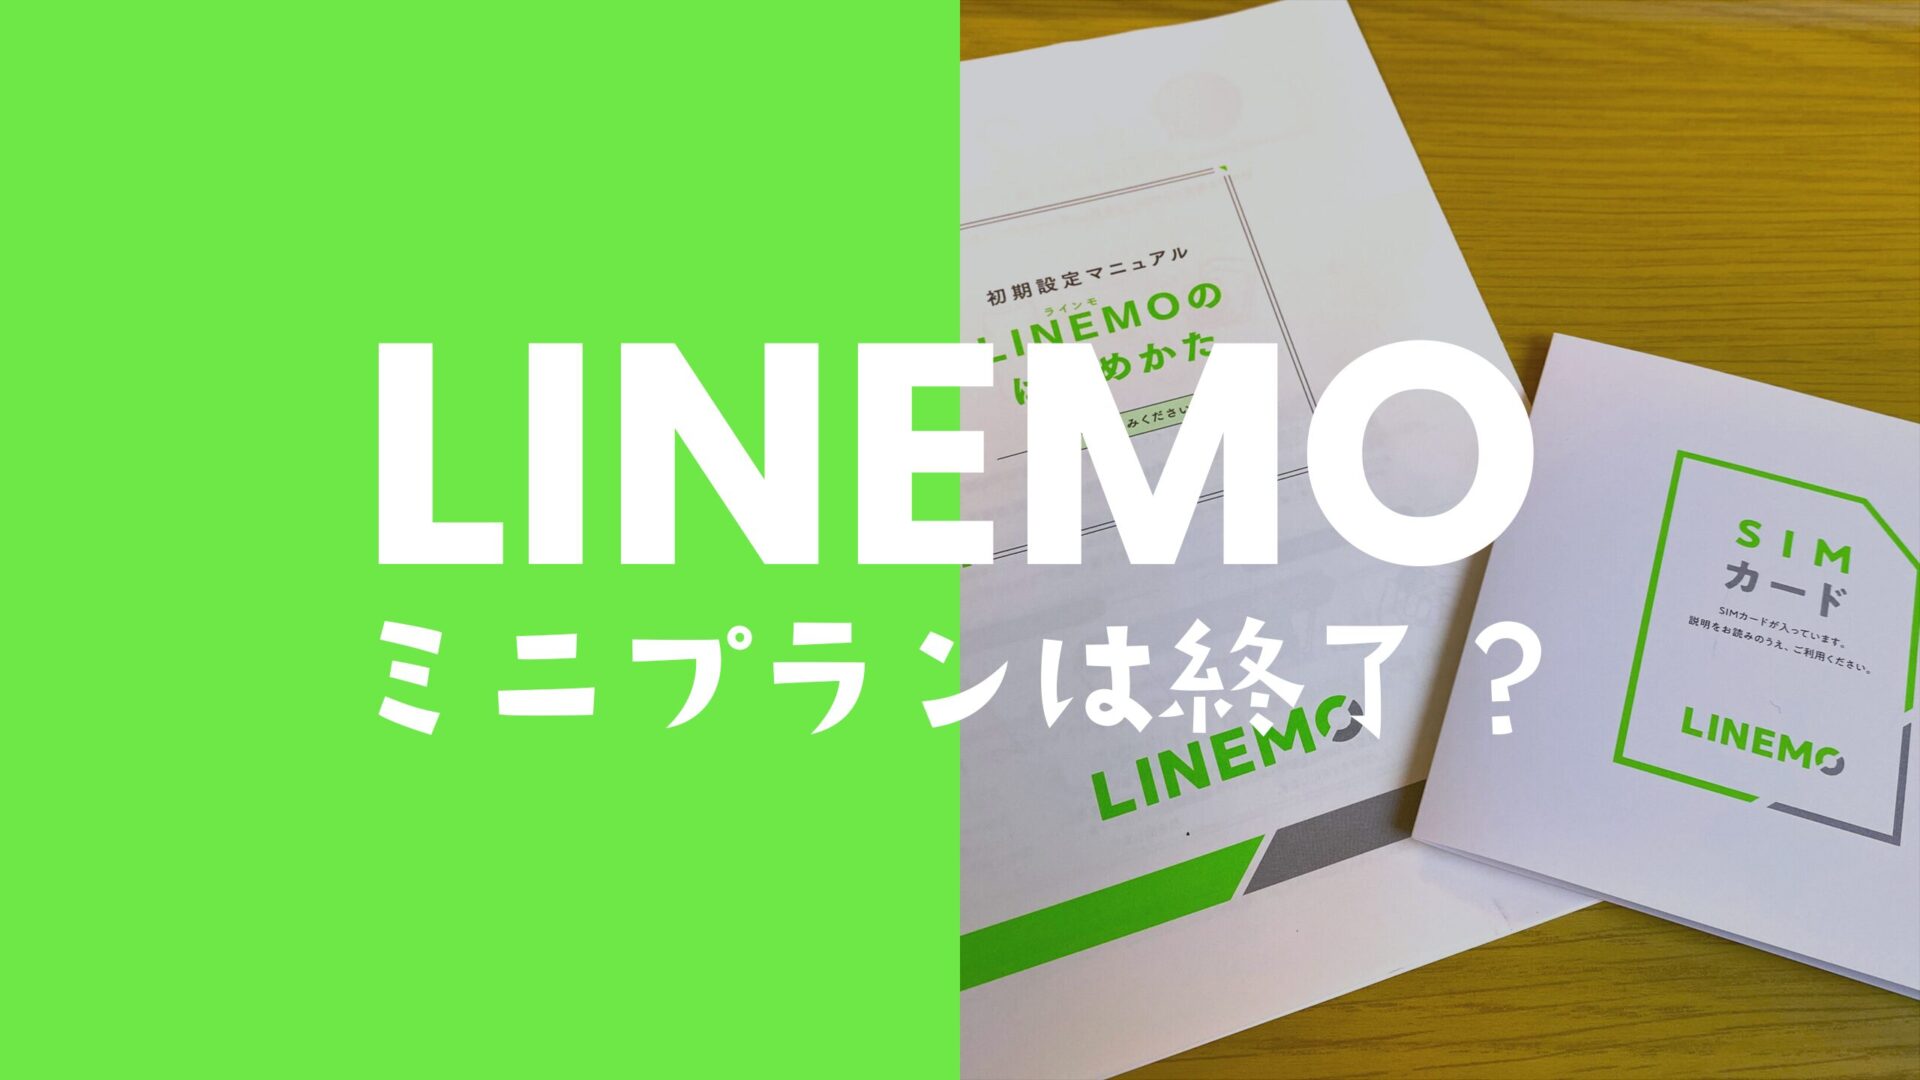 LINEMO(ラインモ)のミニプランはなくなる？廃止して終了なのか解説。のサムネイル画像